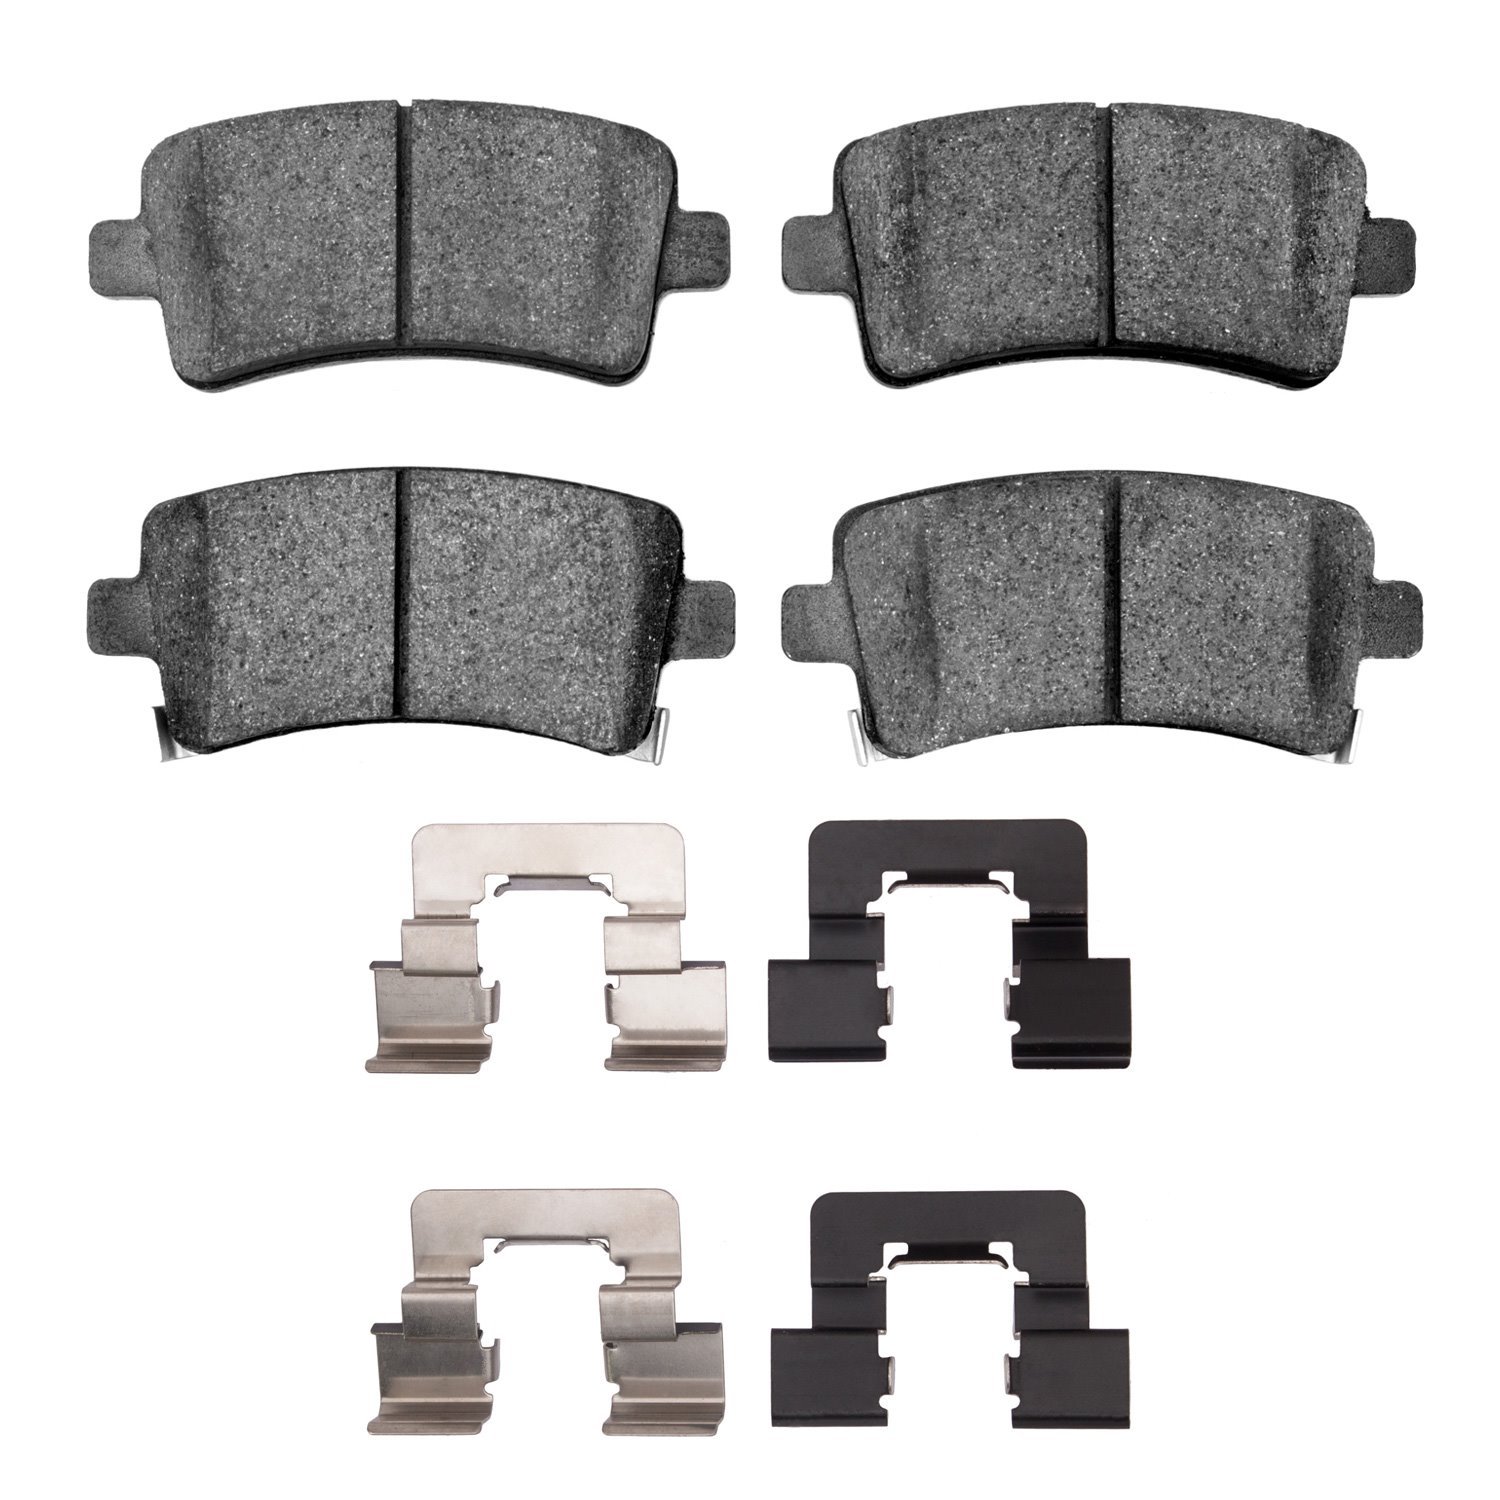 1600-1430-02 5000 Euro Ceramic Brake Pads & Hardware Kit, 2011-2016 GM, Position: Rear